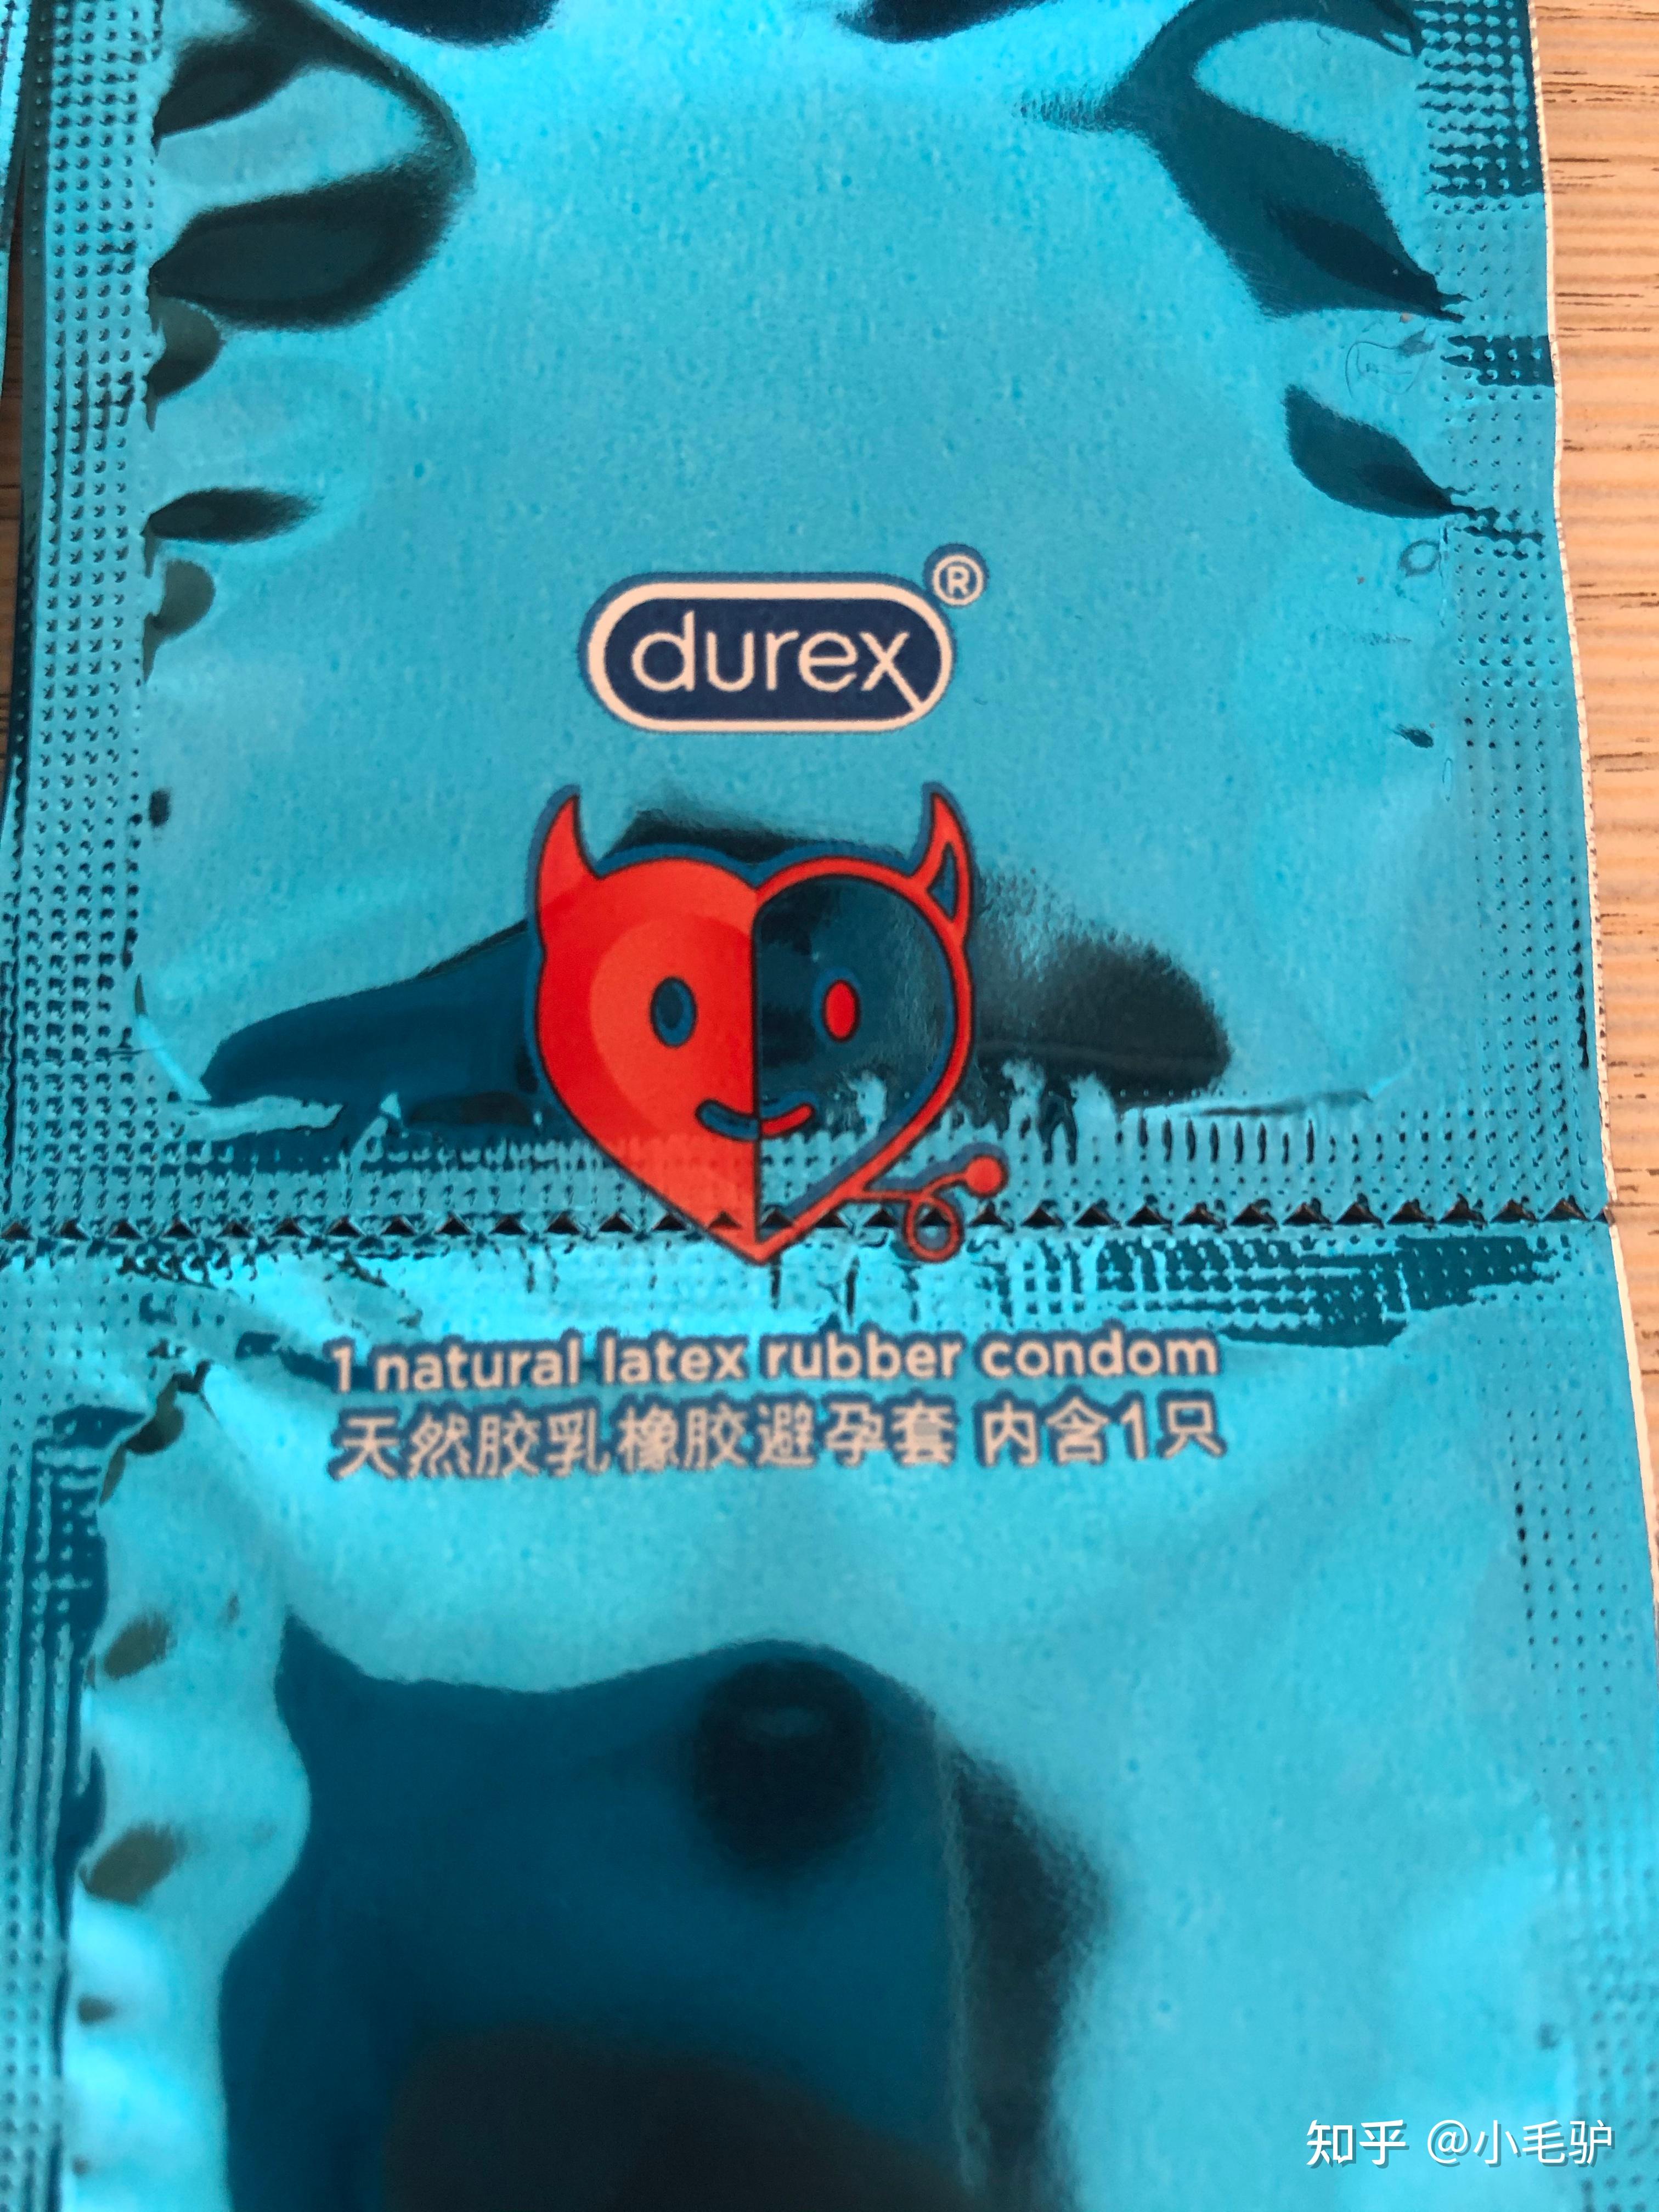 杜蕾斯避孕套正反图片